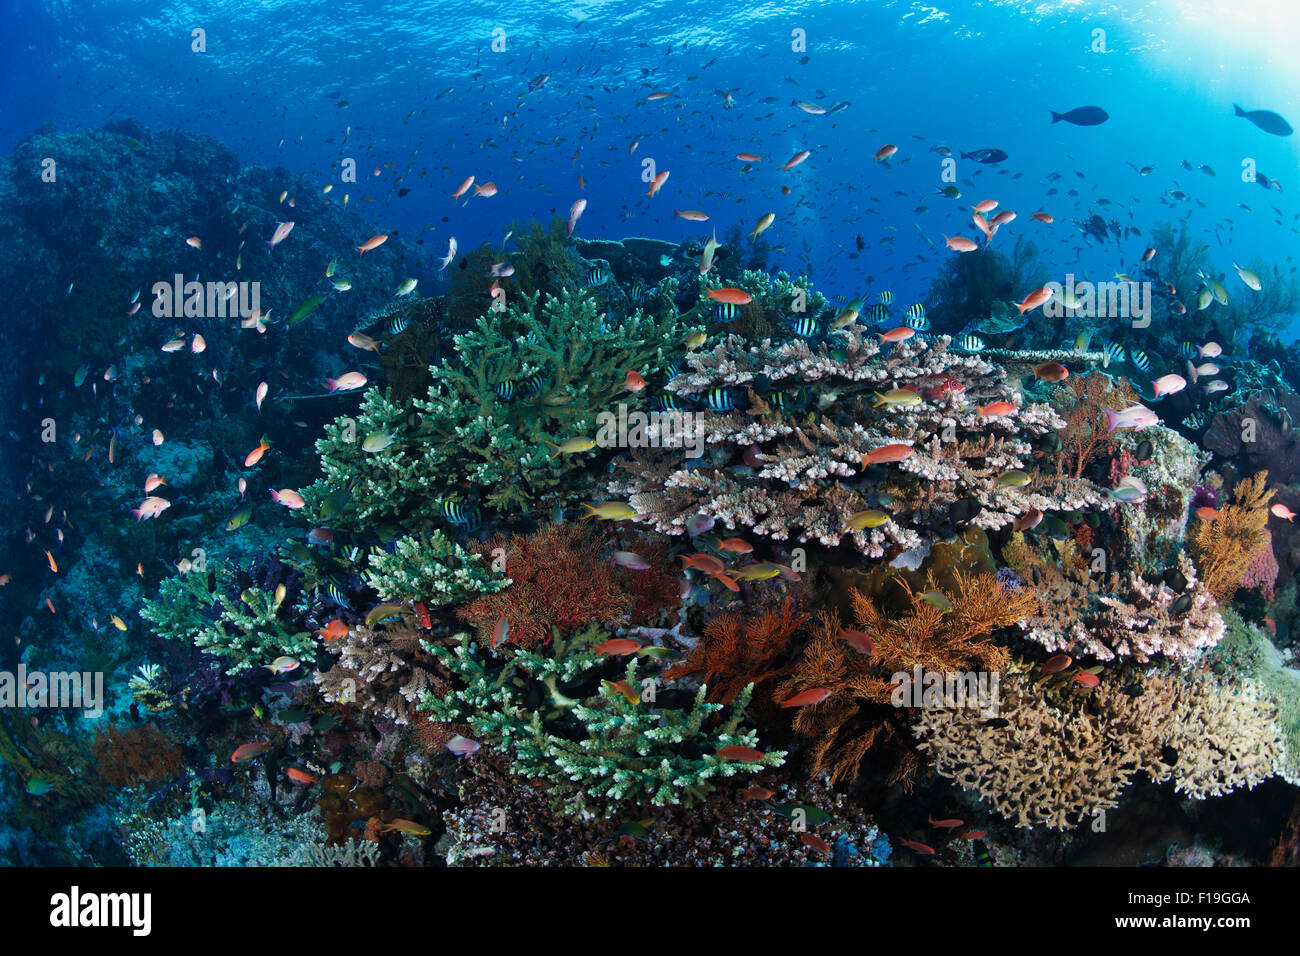 Px0660-D. un arrecife de coral saludable en todo su esplendor, con muchas especies de peces y corales floreciente. Indonesia, del océano Pacífico tropical Foto de stock